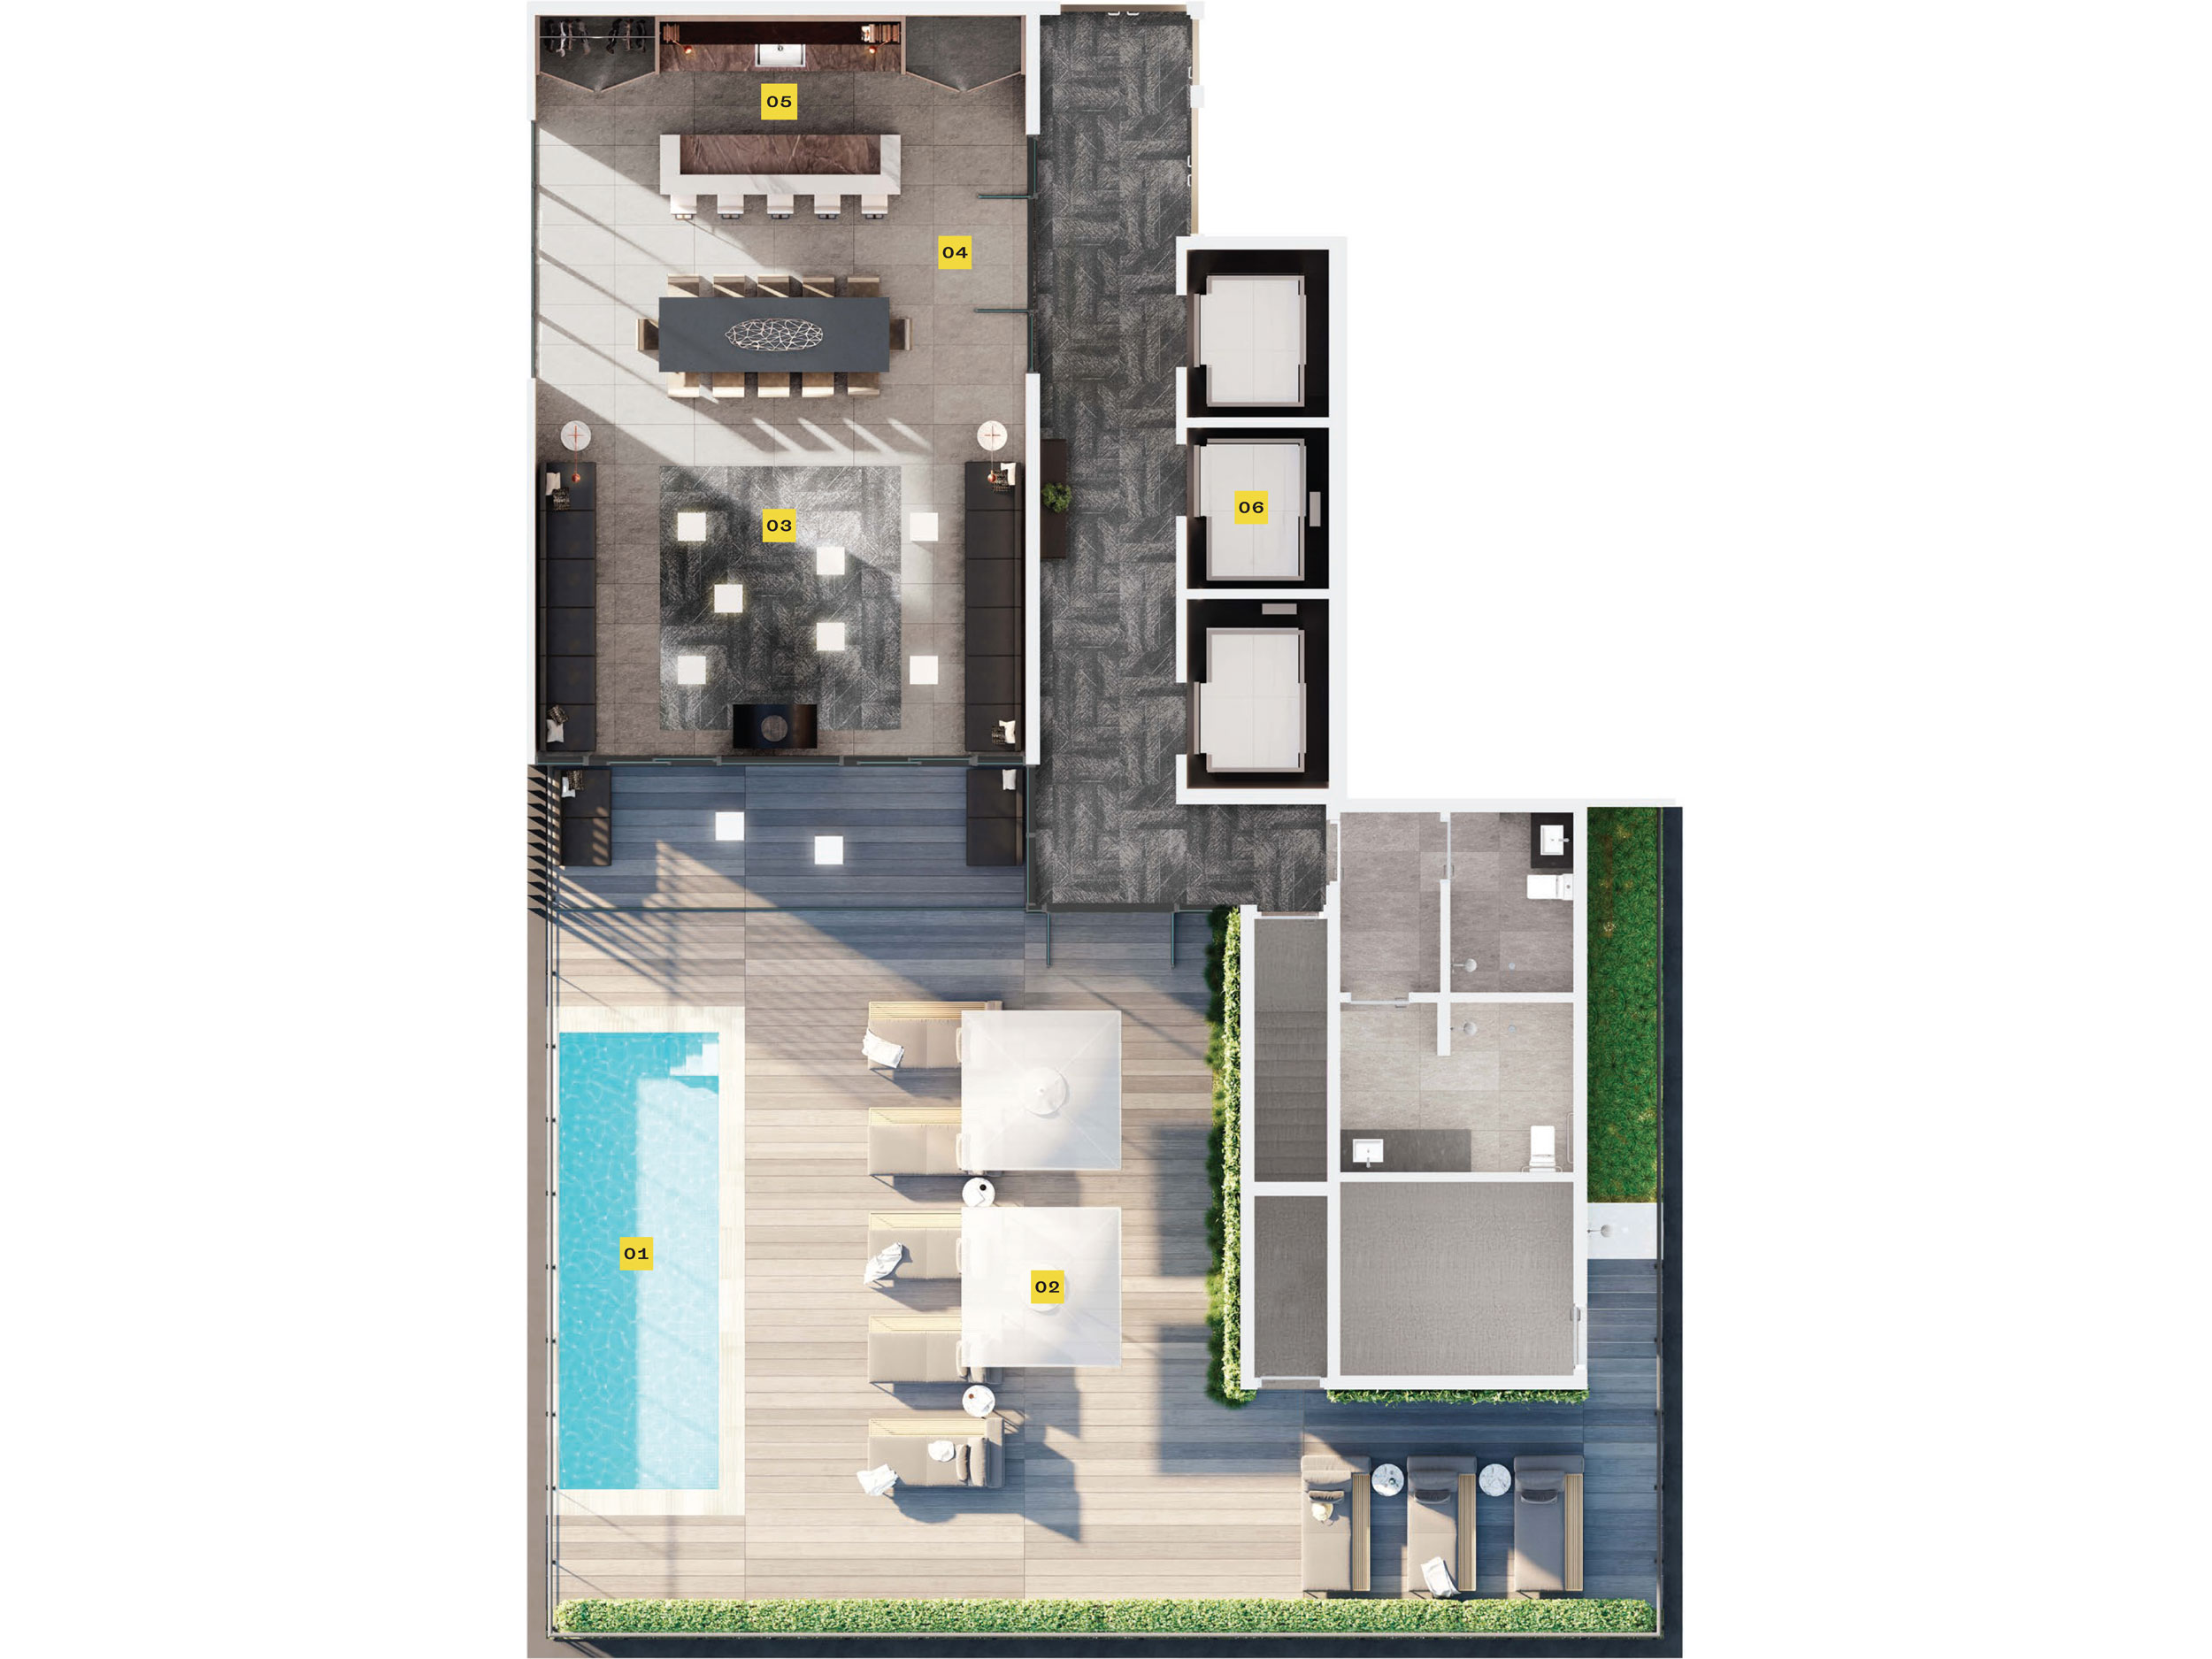 MRKT Alexandra Park 15th Floor Amenity Plan